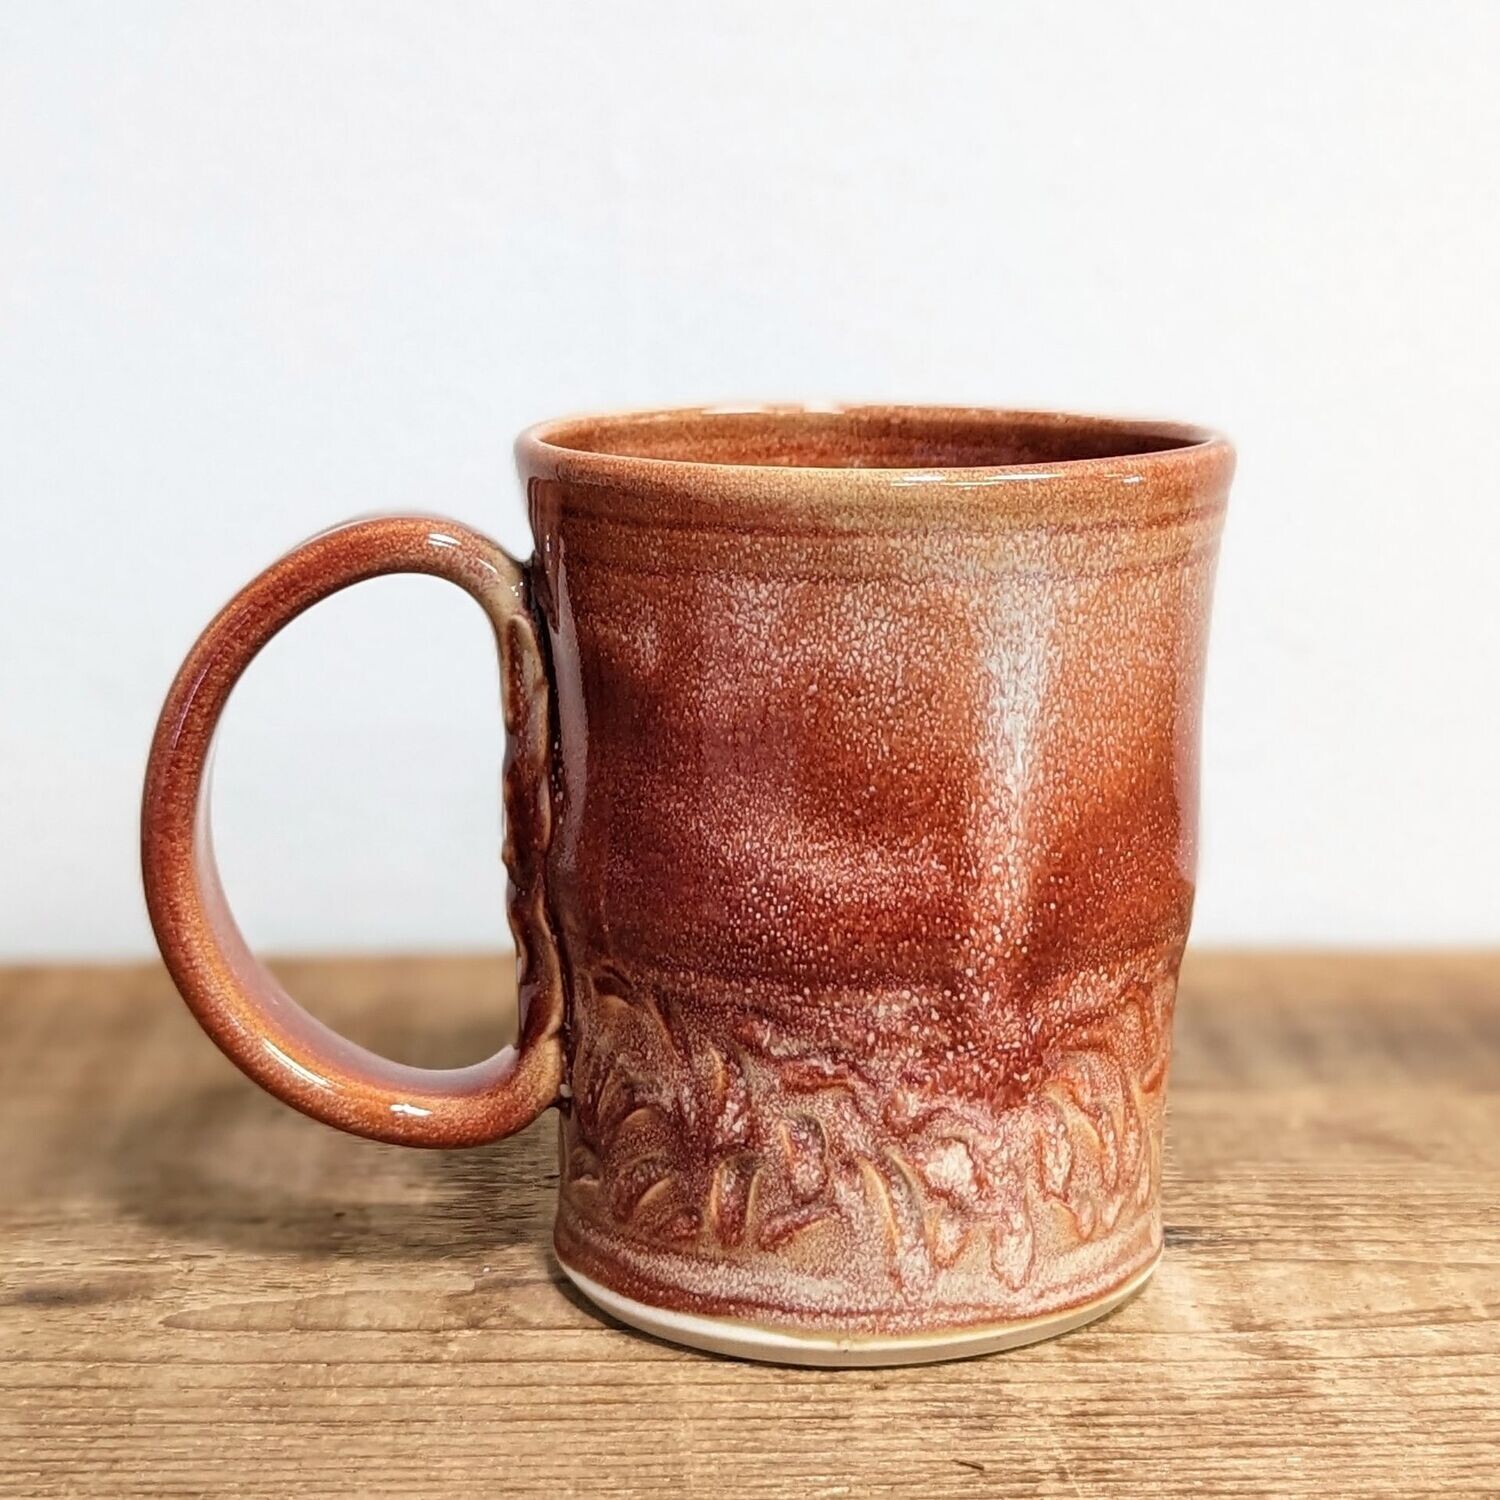 Red Carved Mug